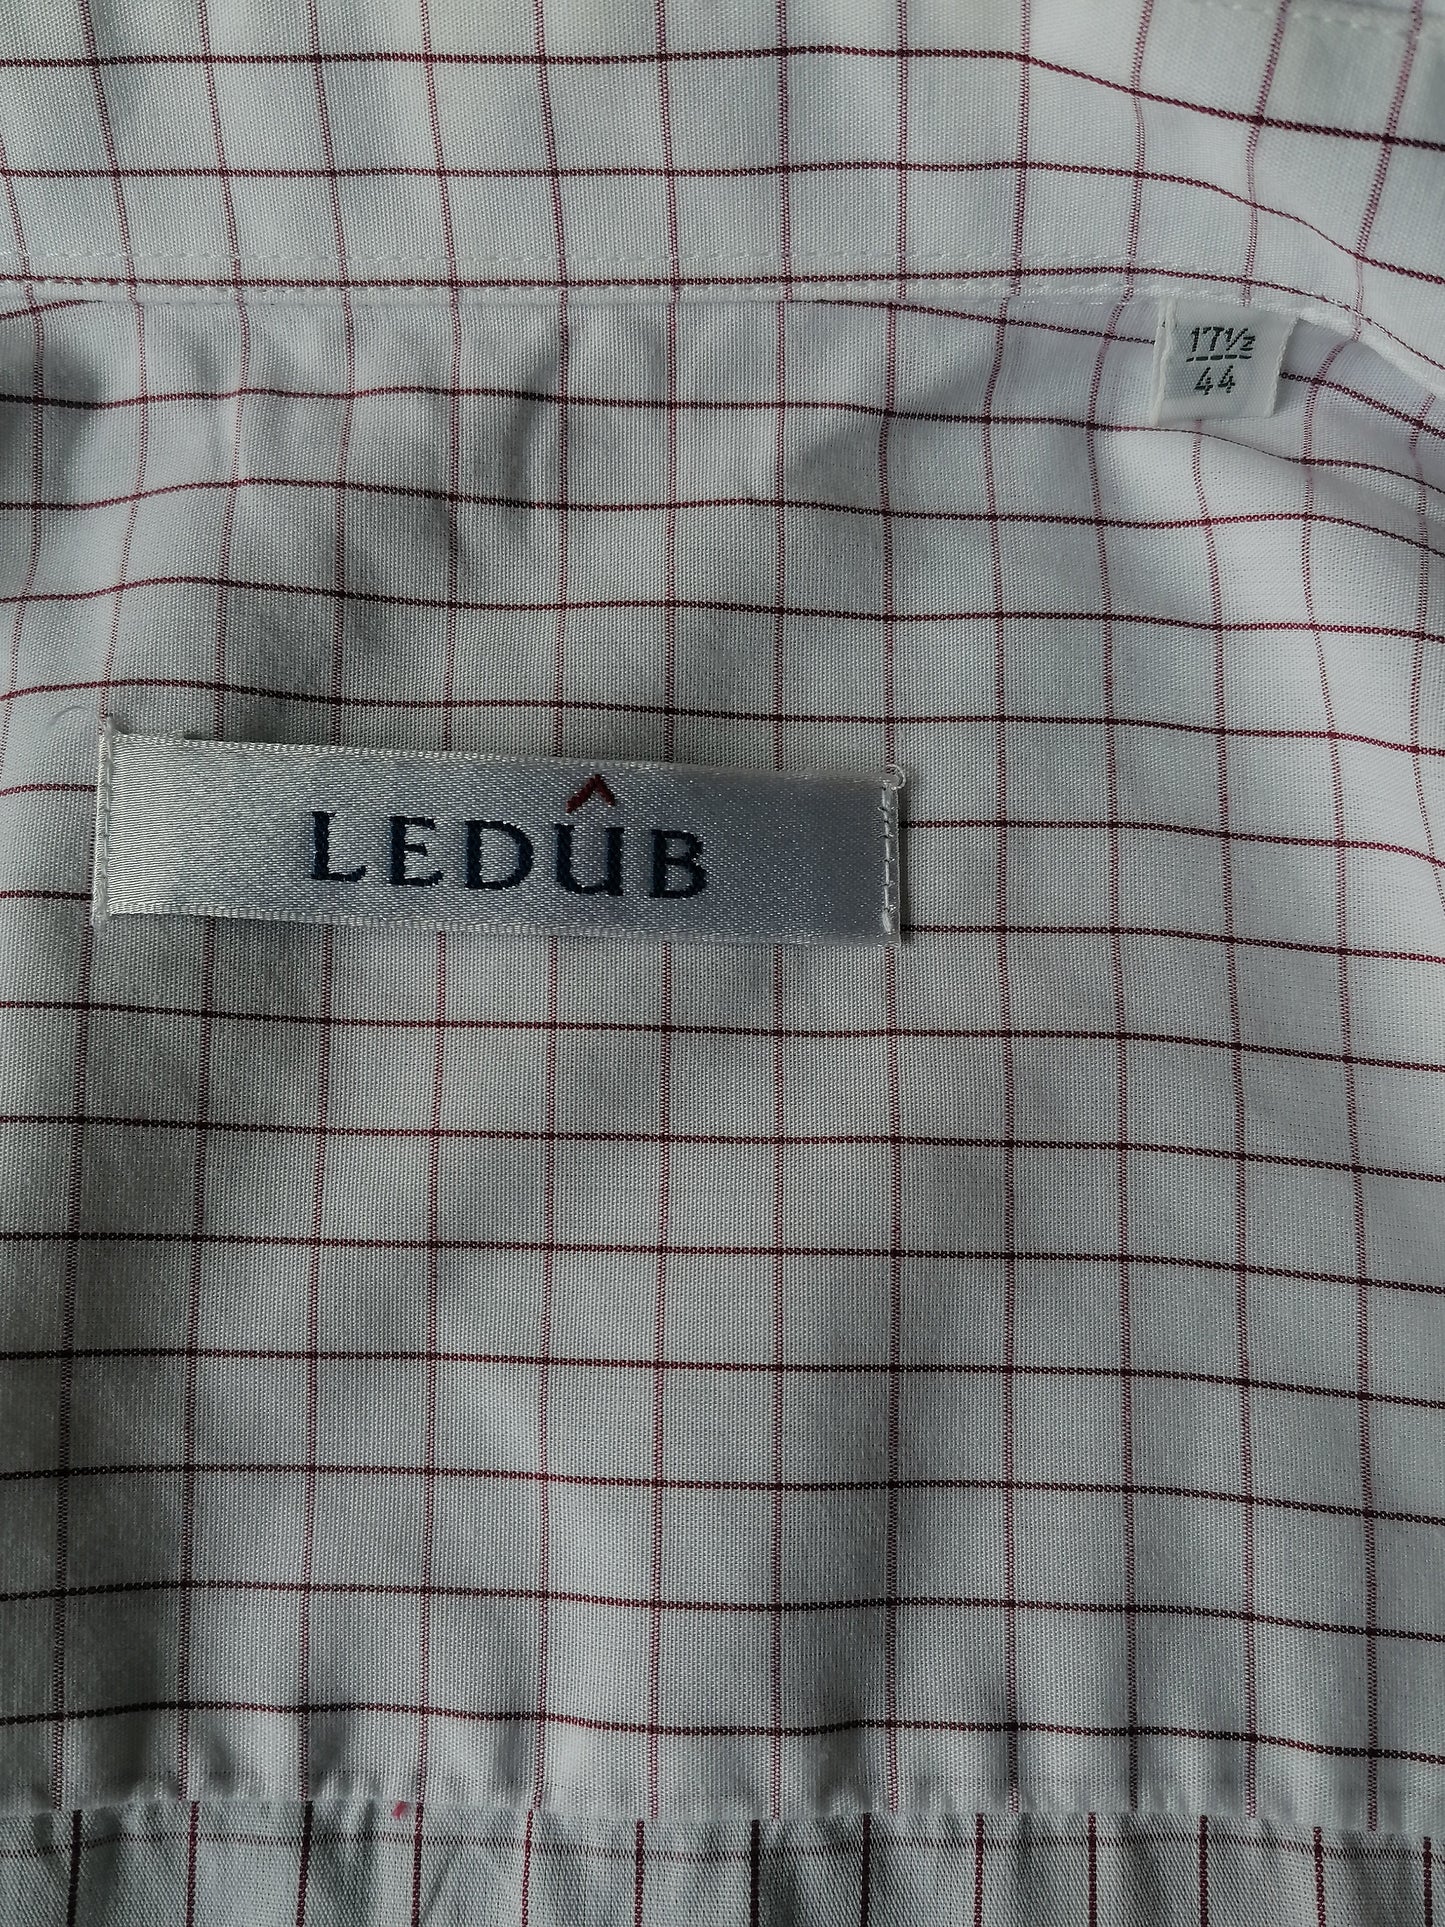 Ledub -Shirt. Weiß rote blockiert. Größe 44 / / xl.